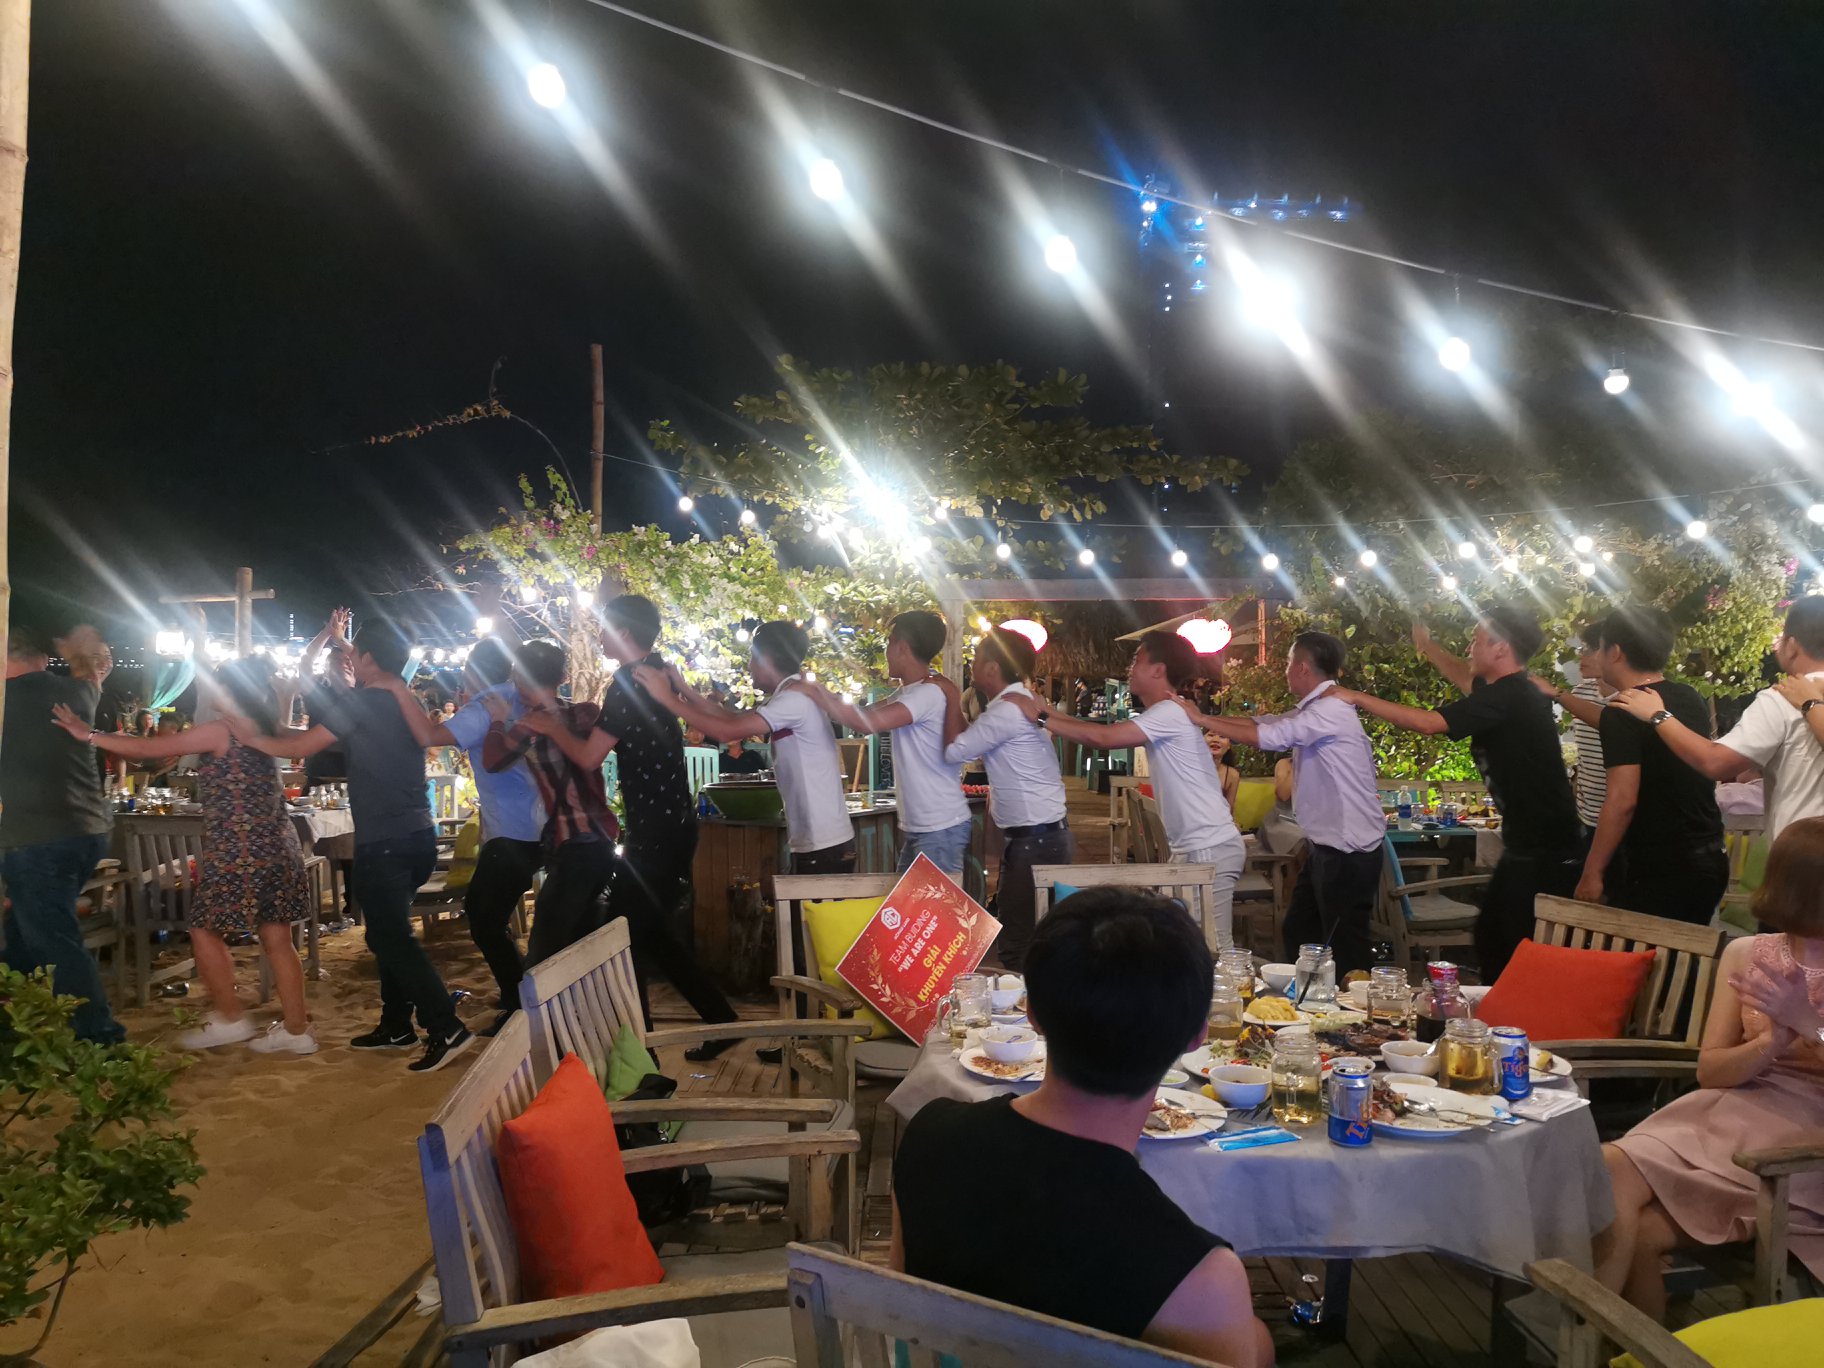 a chau land to chuc gala dinner lang man ben bo bien quy nhon 28 - Á Châu Land tổ chức gala dinner lãng mạn bên bờ biển Quy Nhơn